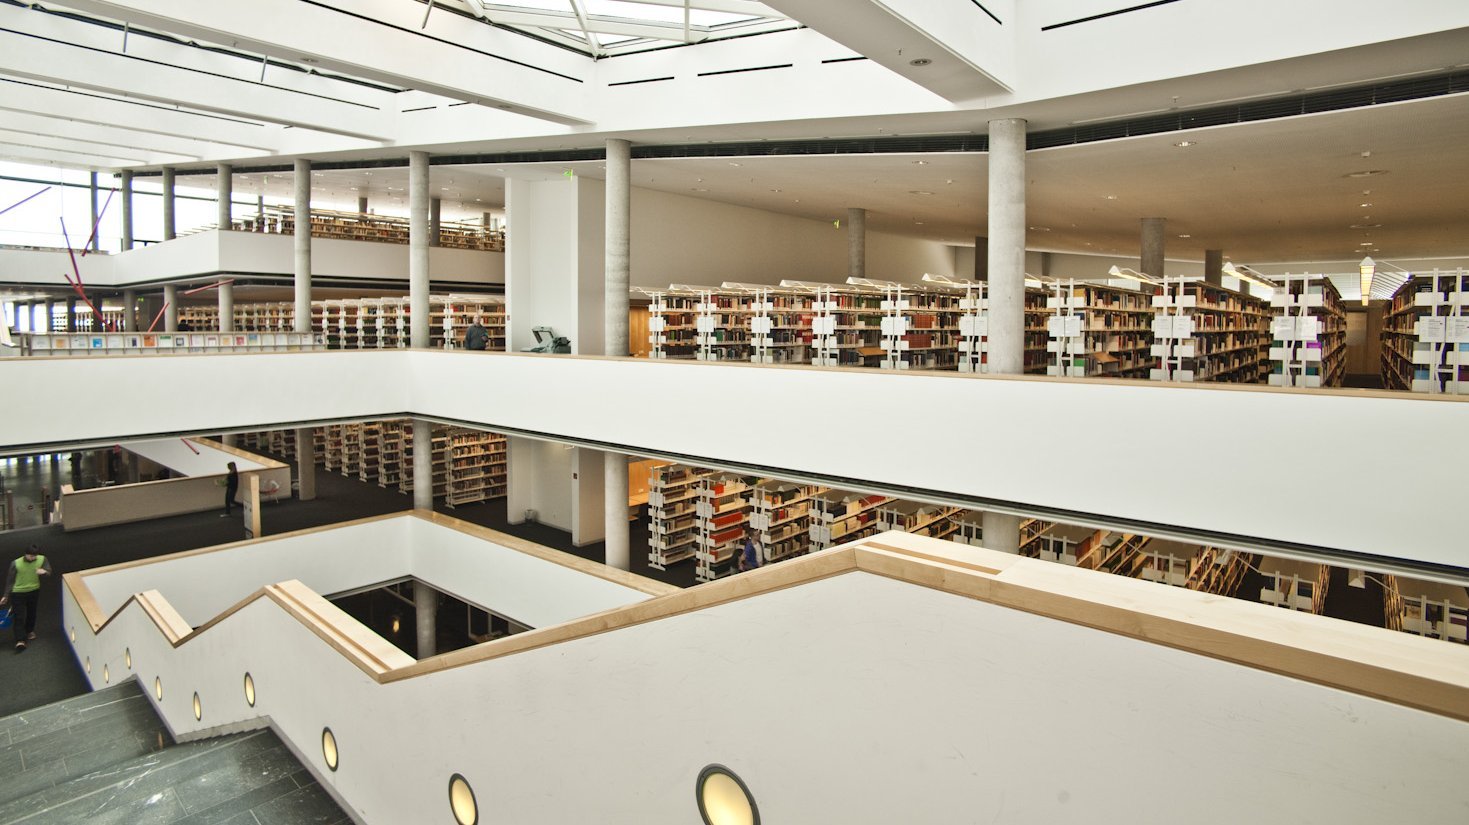 Bibliothek von innen